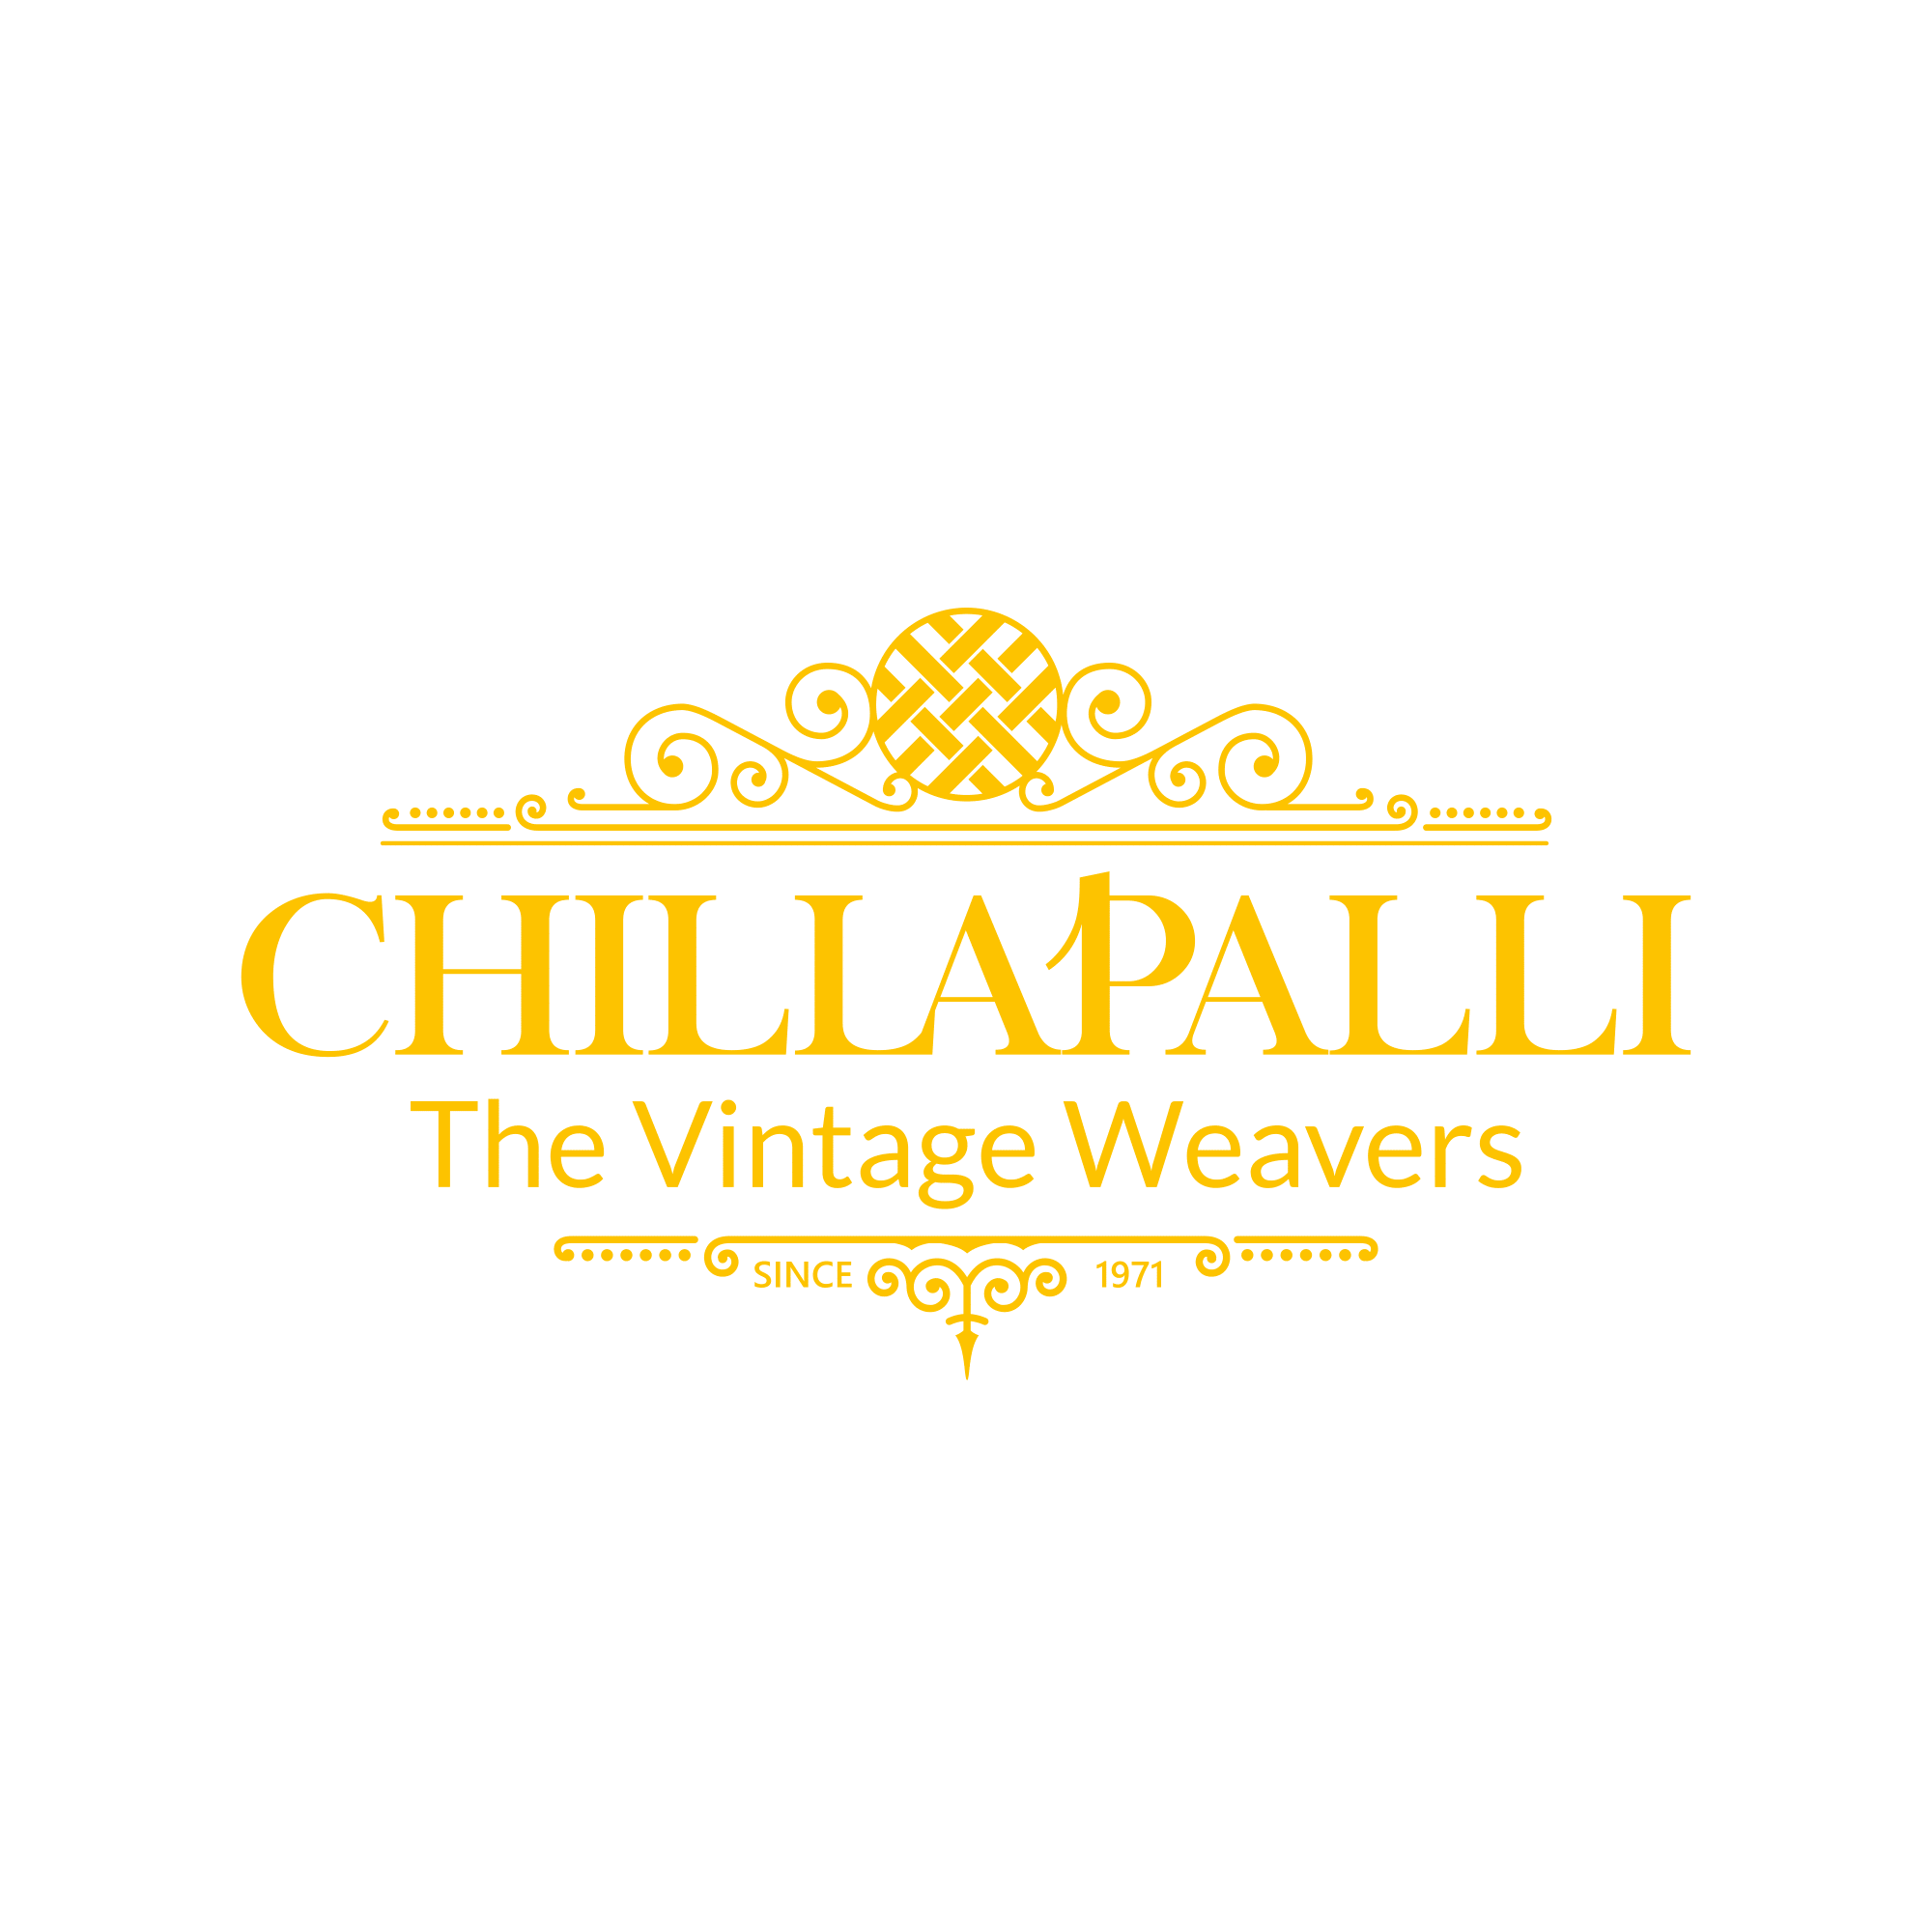 Chillapalli Weavers